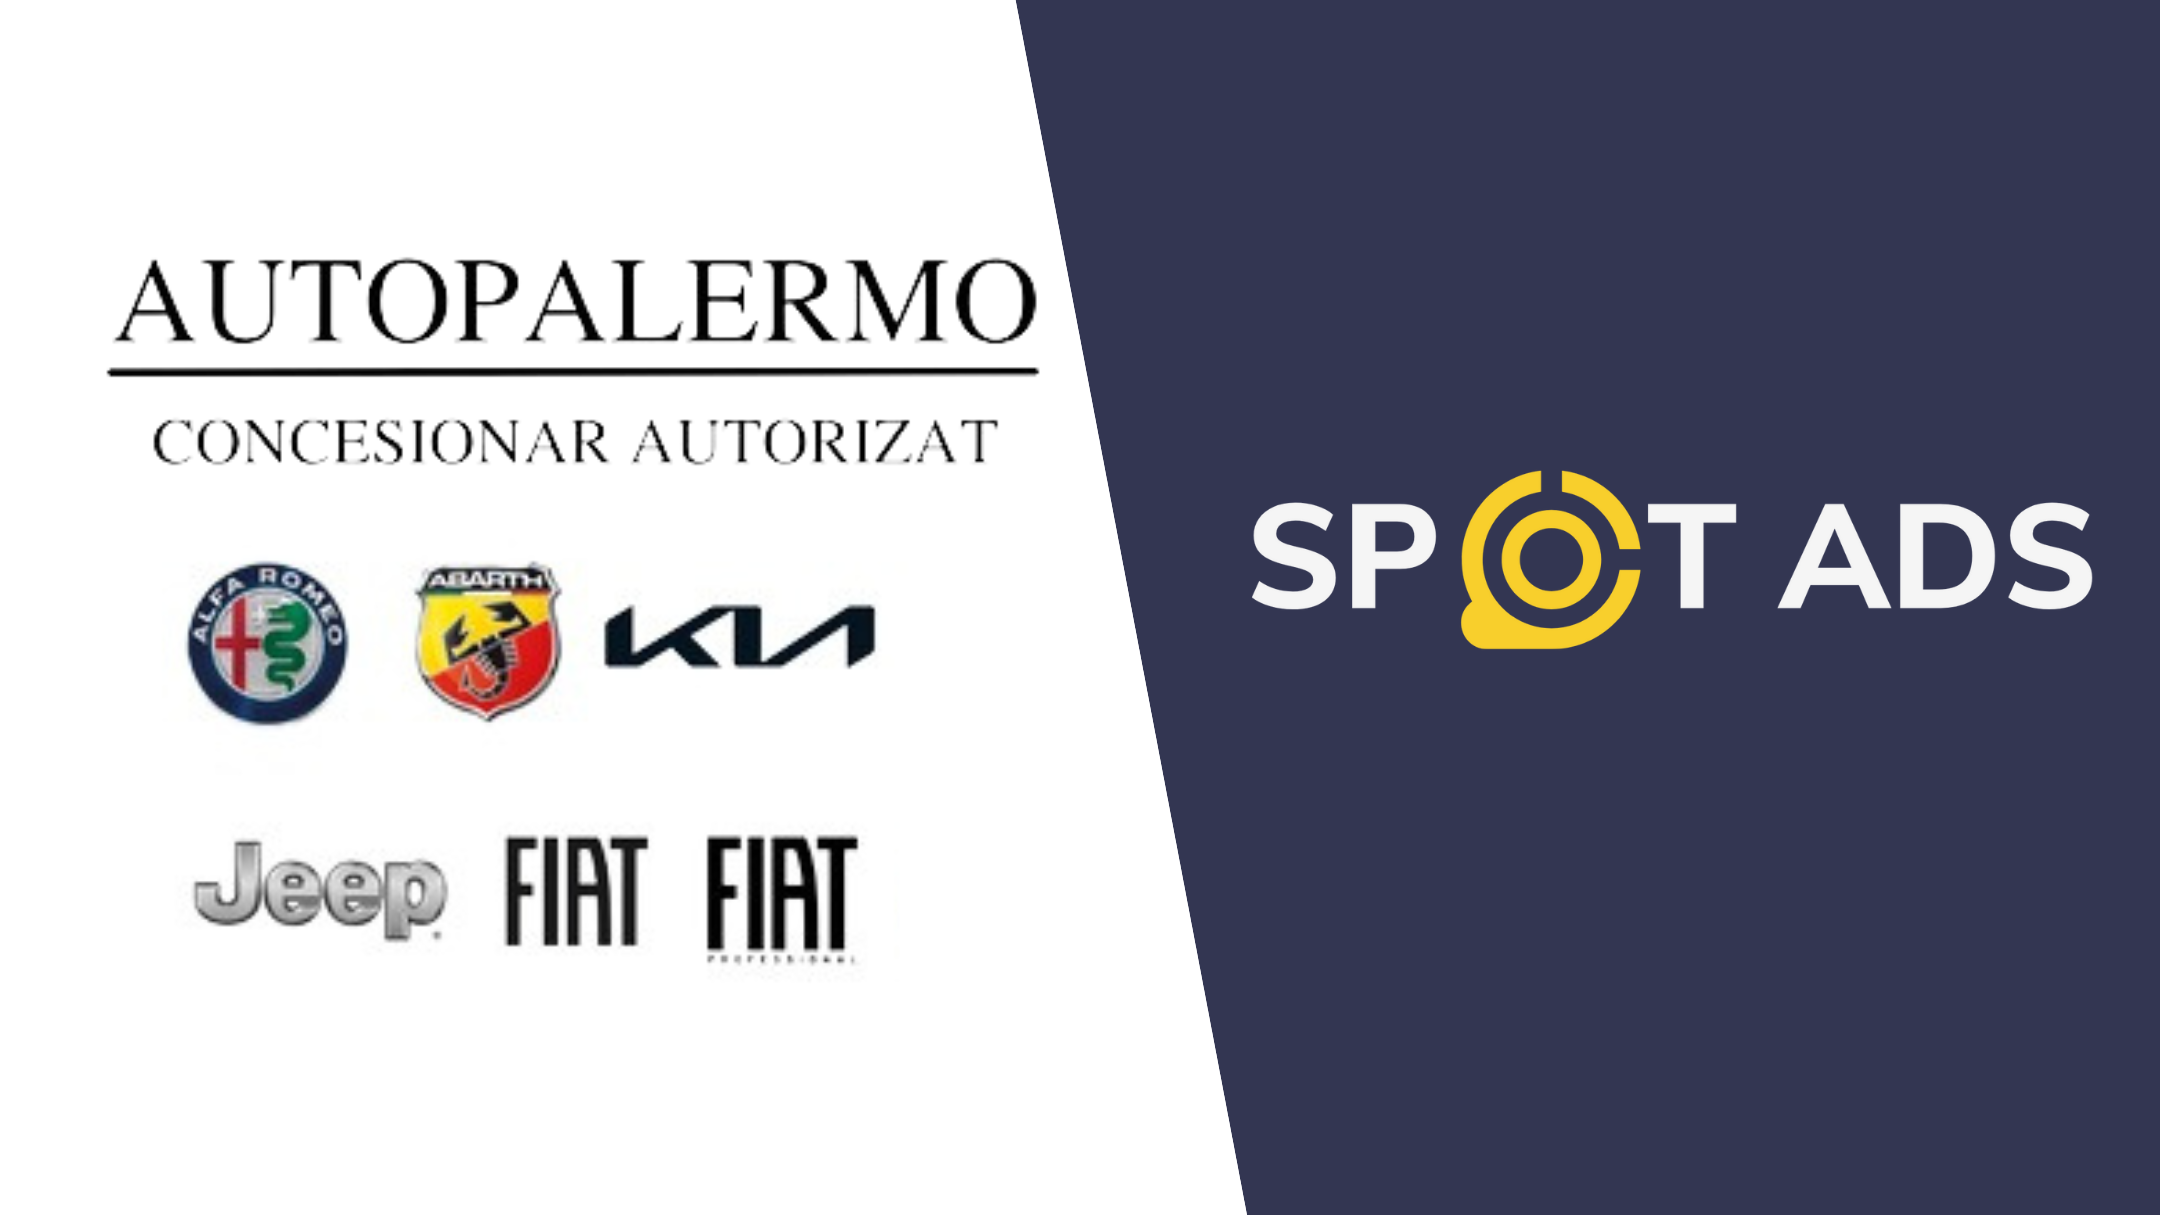 Spot Ads anunță debutul parteneriatului cu AutoPalermo. Călin Roman: “Dorim să oferim rezultate palpabile partenerilor noștri.”